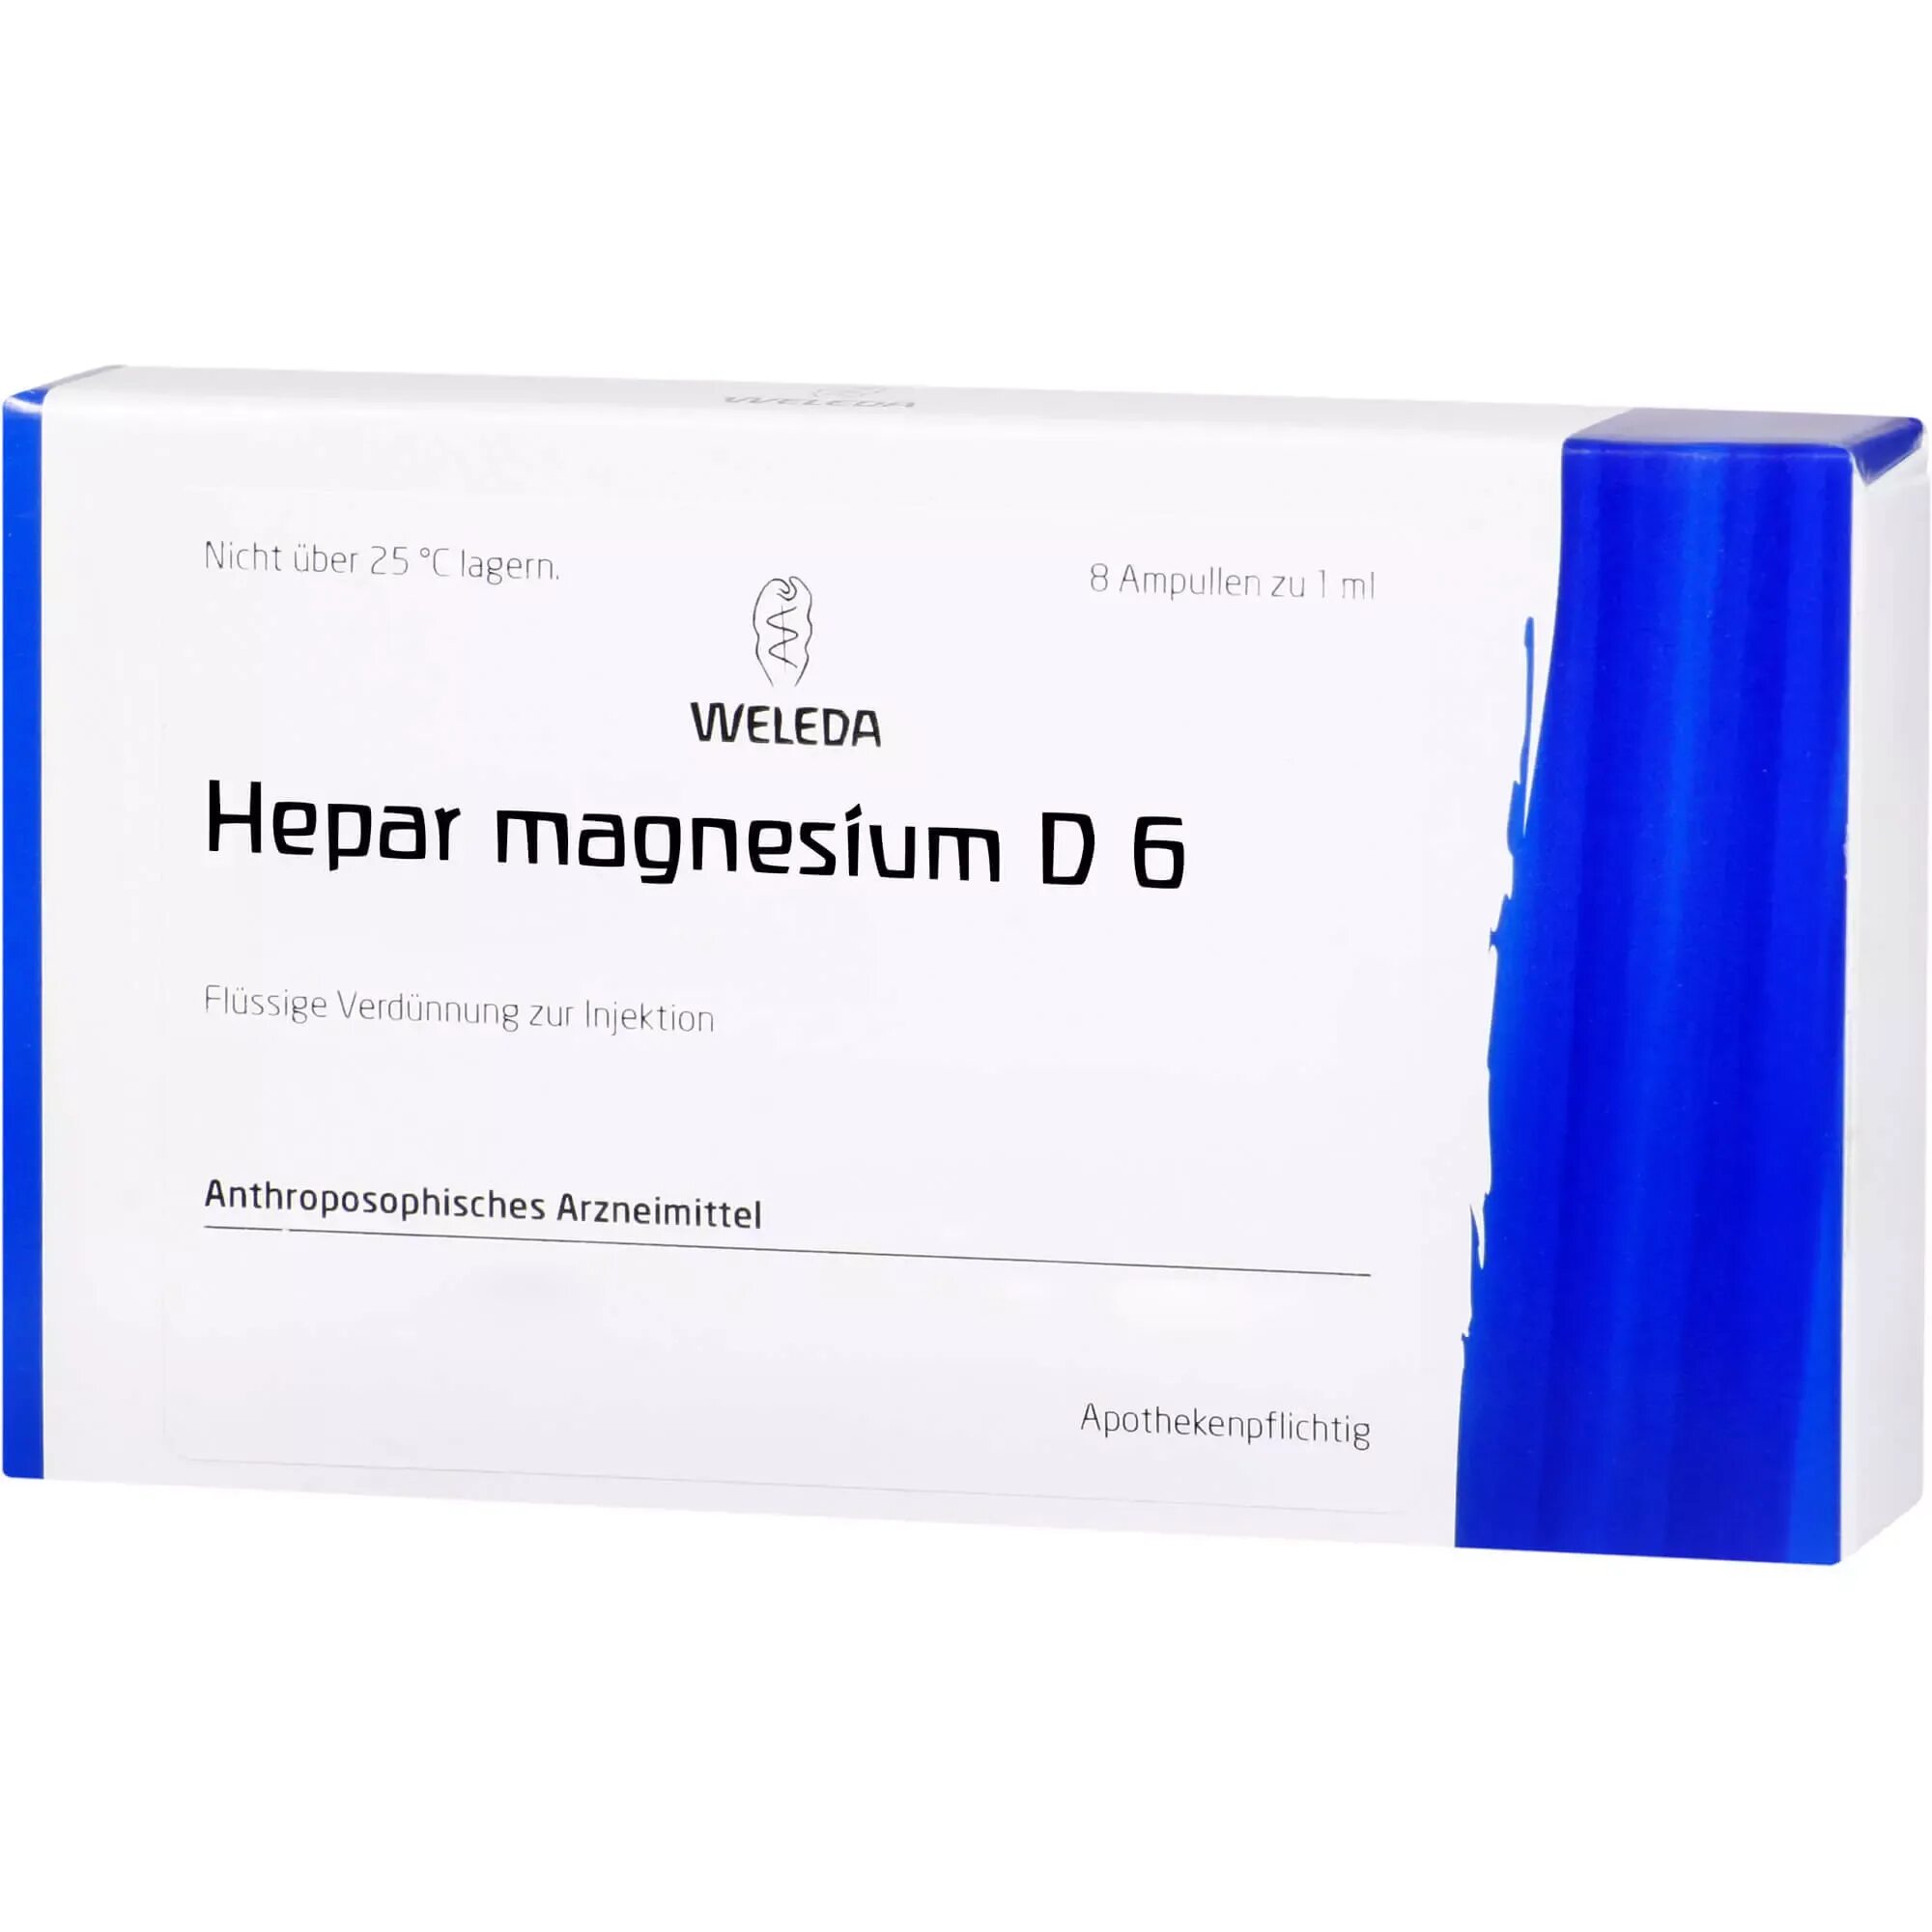 Стибиум для химика 6 букв. Stibium Metallicum praeparatum. Ampullen. Лекарственный препарат (praeparatum pharmaceuticum). Acidum arsenicosum.